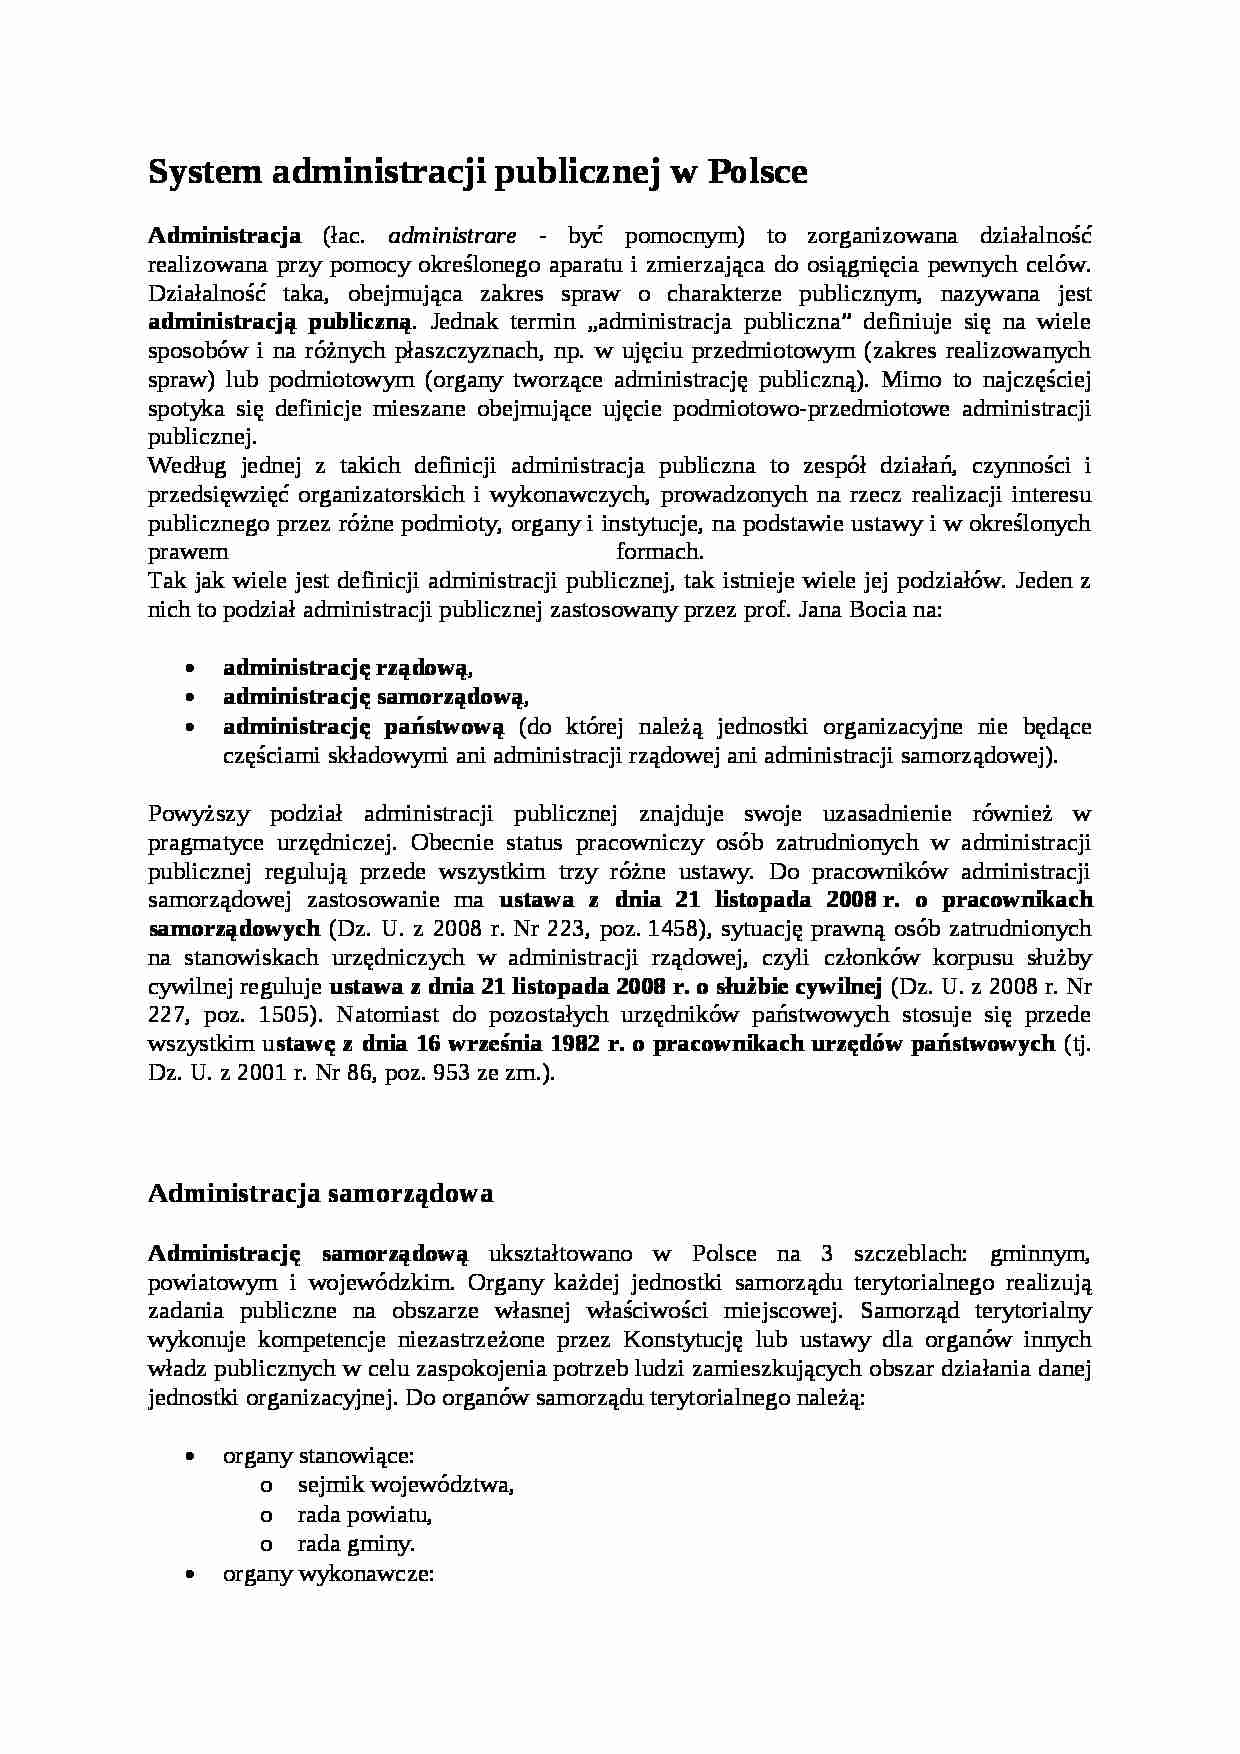 System administracji publicznej w Polsce - strona 1